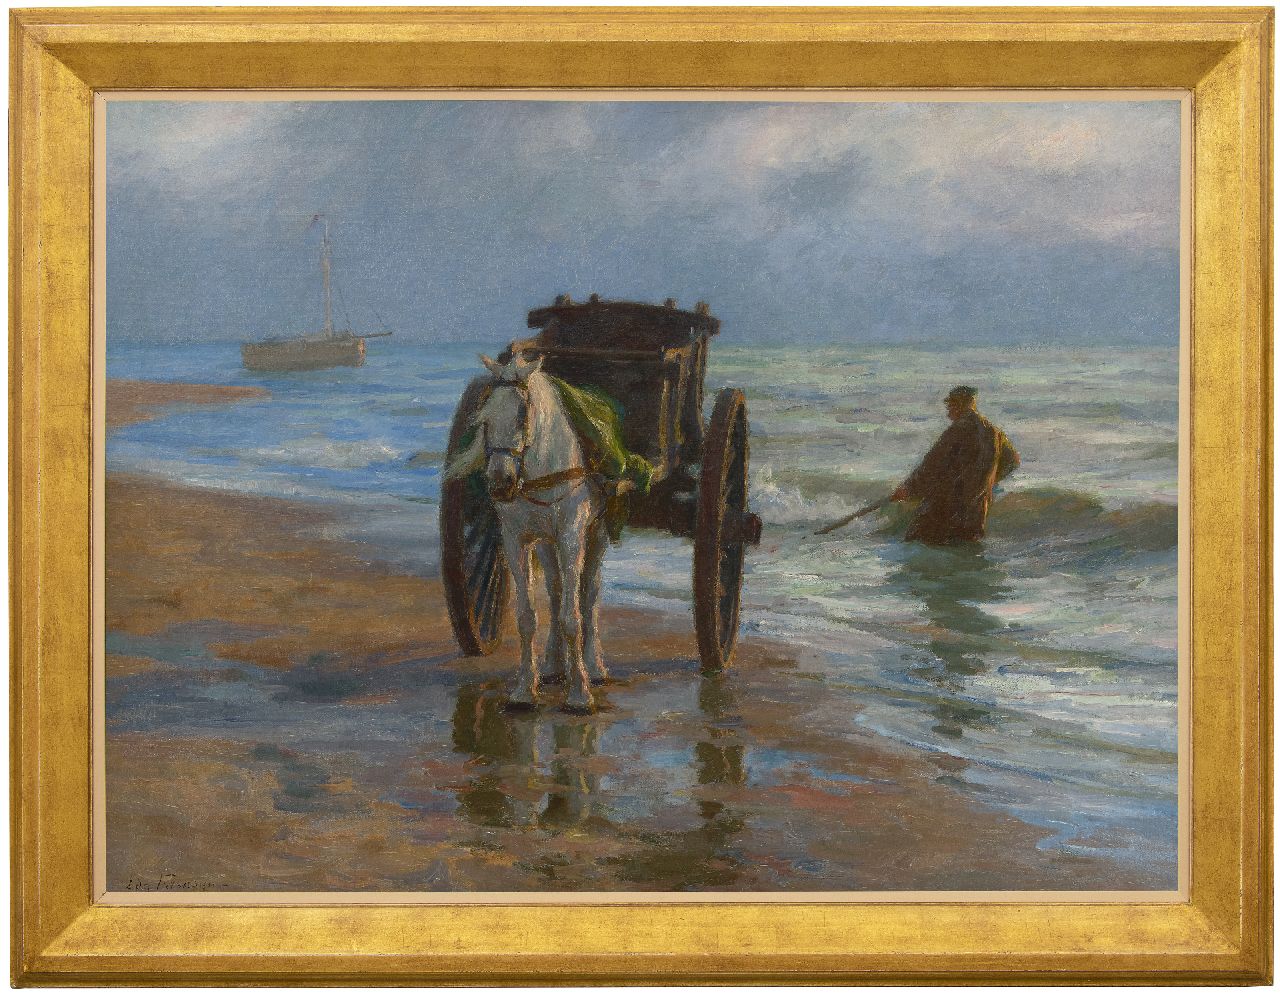 Farasijn E.  | Edgard Farasijn | Schilderijen te koop aangeboden | Schelpenvisser aan de Noordzeekust, olieverf op doek 88,2 x 120,7 cm, gesigneerd linksonder